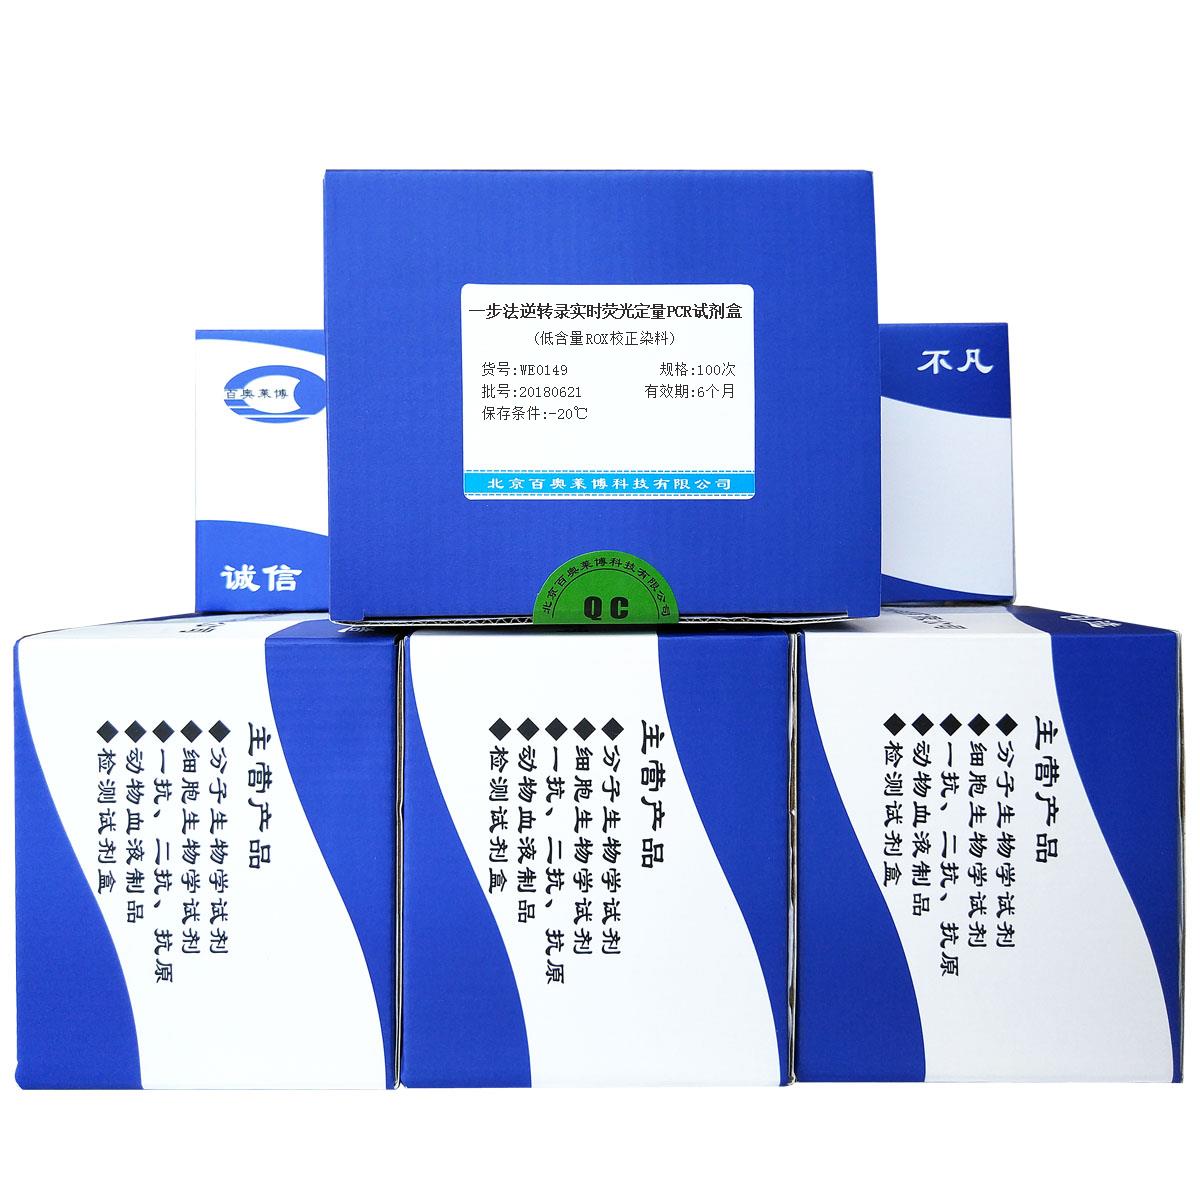 WE0149型一步法逆转录实时荧光定量PCR试剂盒(低含量ROX校正染料)(国产,进口)